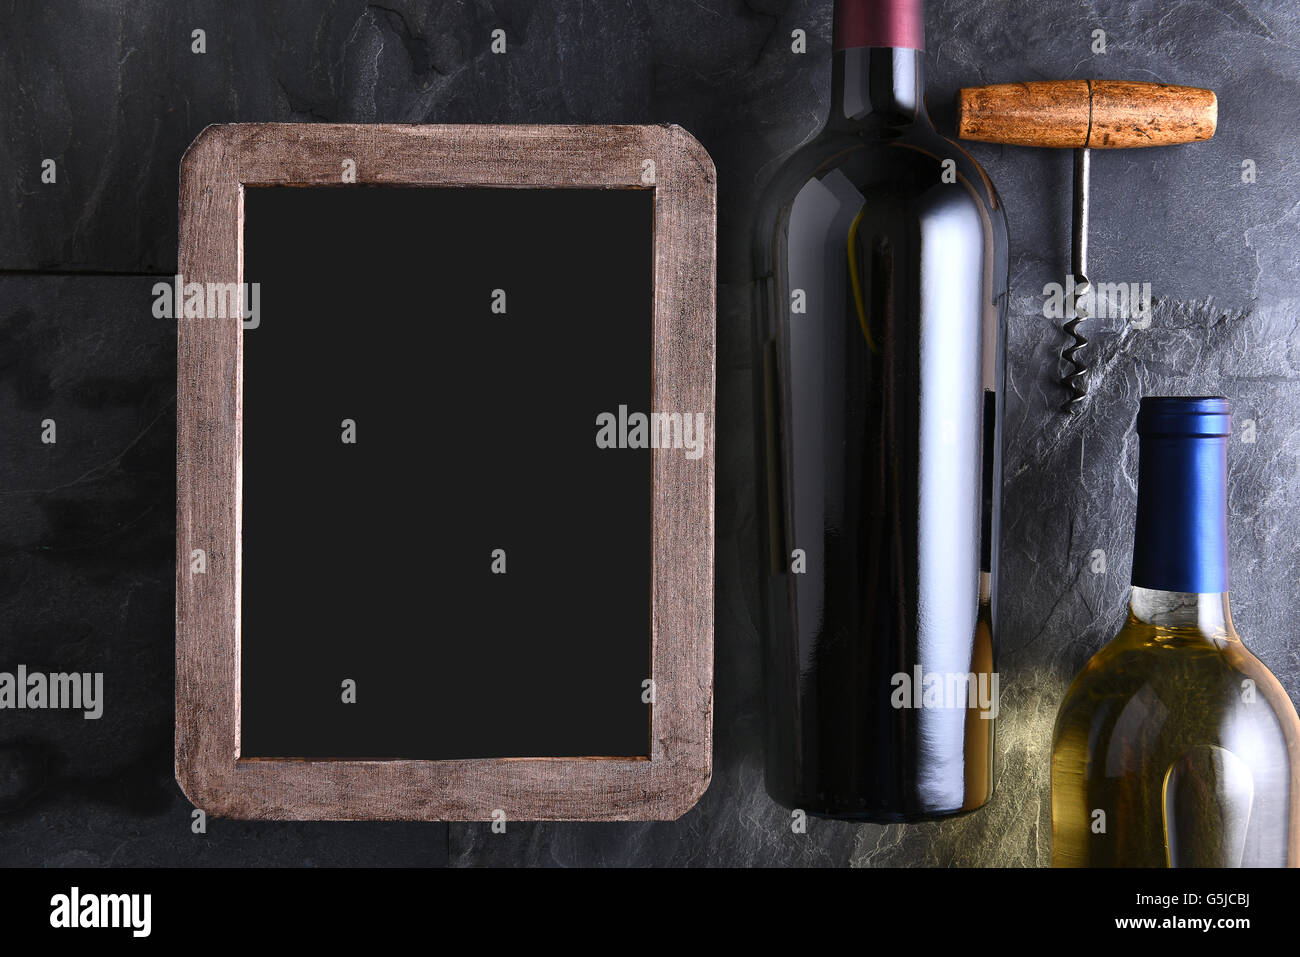 Vista dall'alto di due bottiglie di vino e un cavatappi accanto ad un vuoto di chalk board lista dei vini. Foto Stock